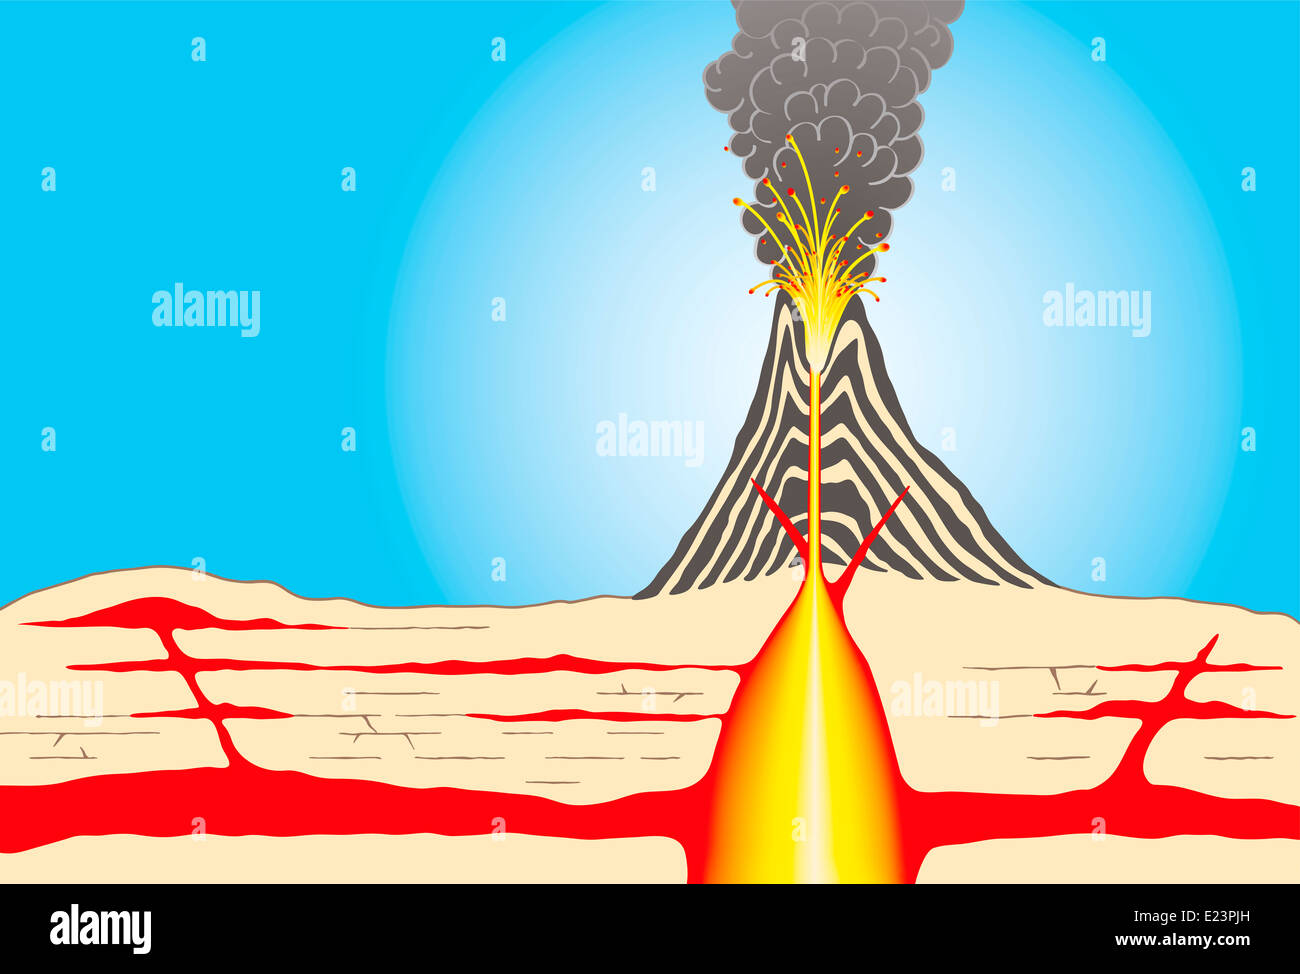 Vulkan - Querschnitt durch ein Vulkan zeigt Ascheschichten, großen Magma Chamber, Leitungen, Lava, Krater und Asche Wolken. Stockfoto